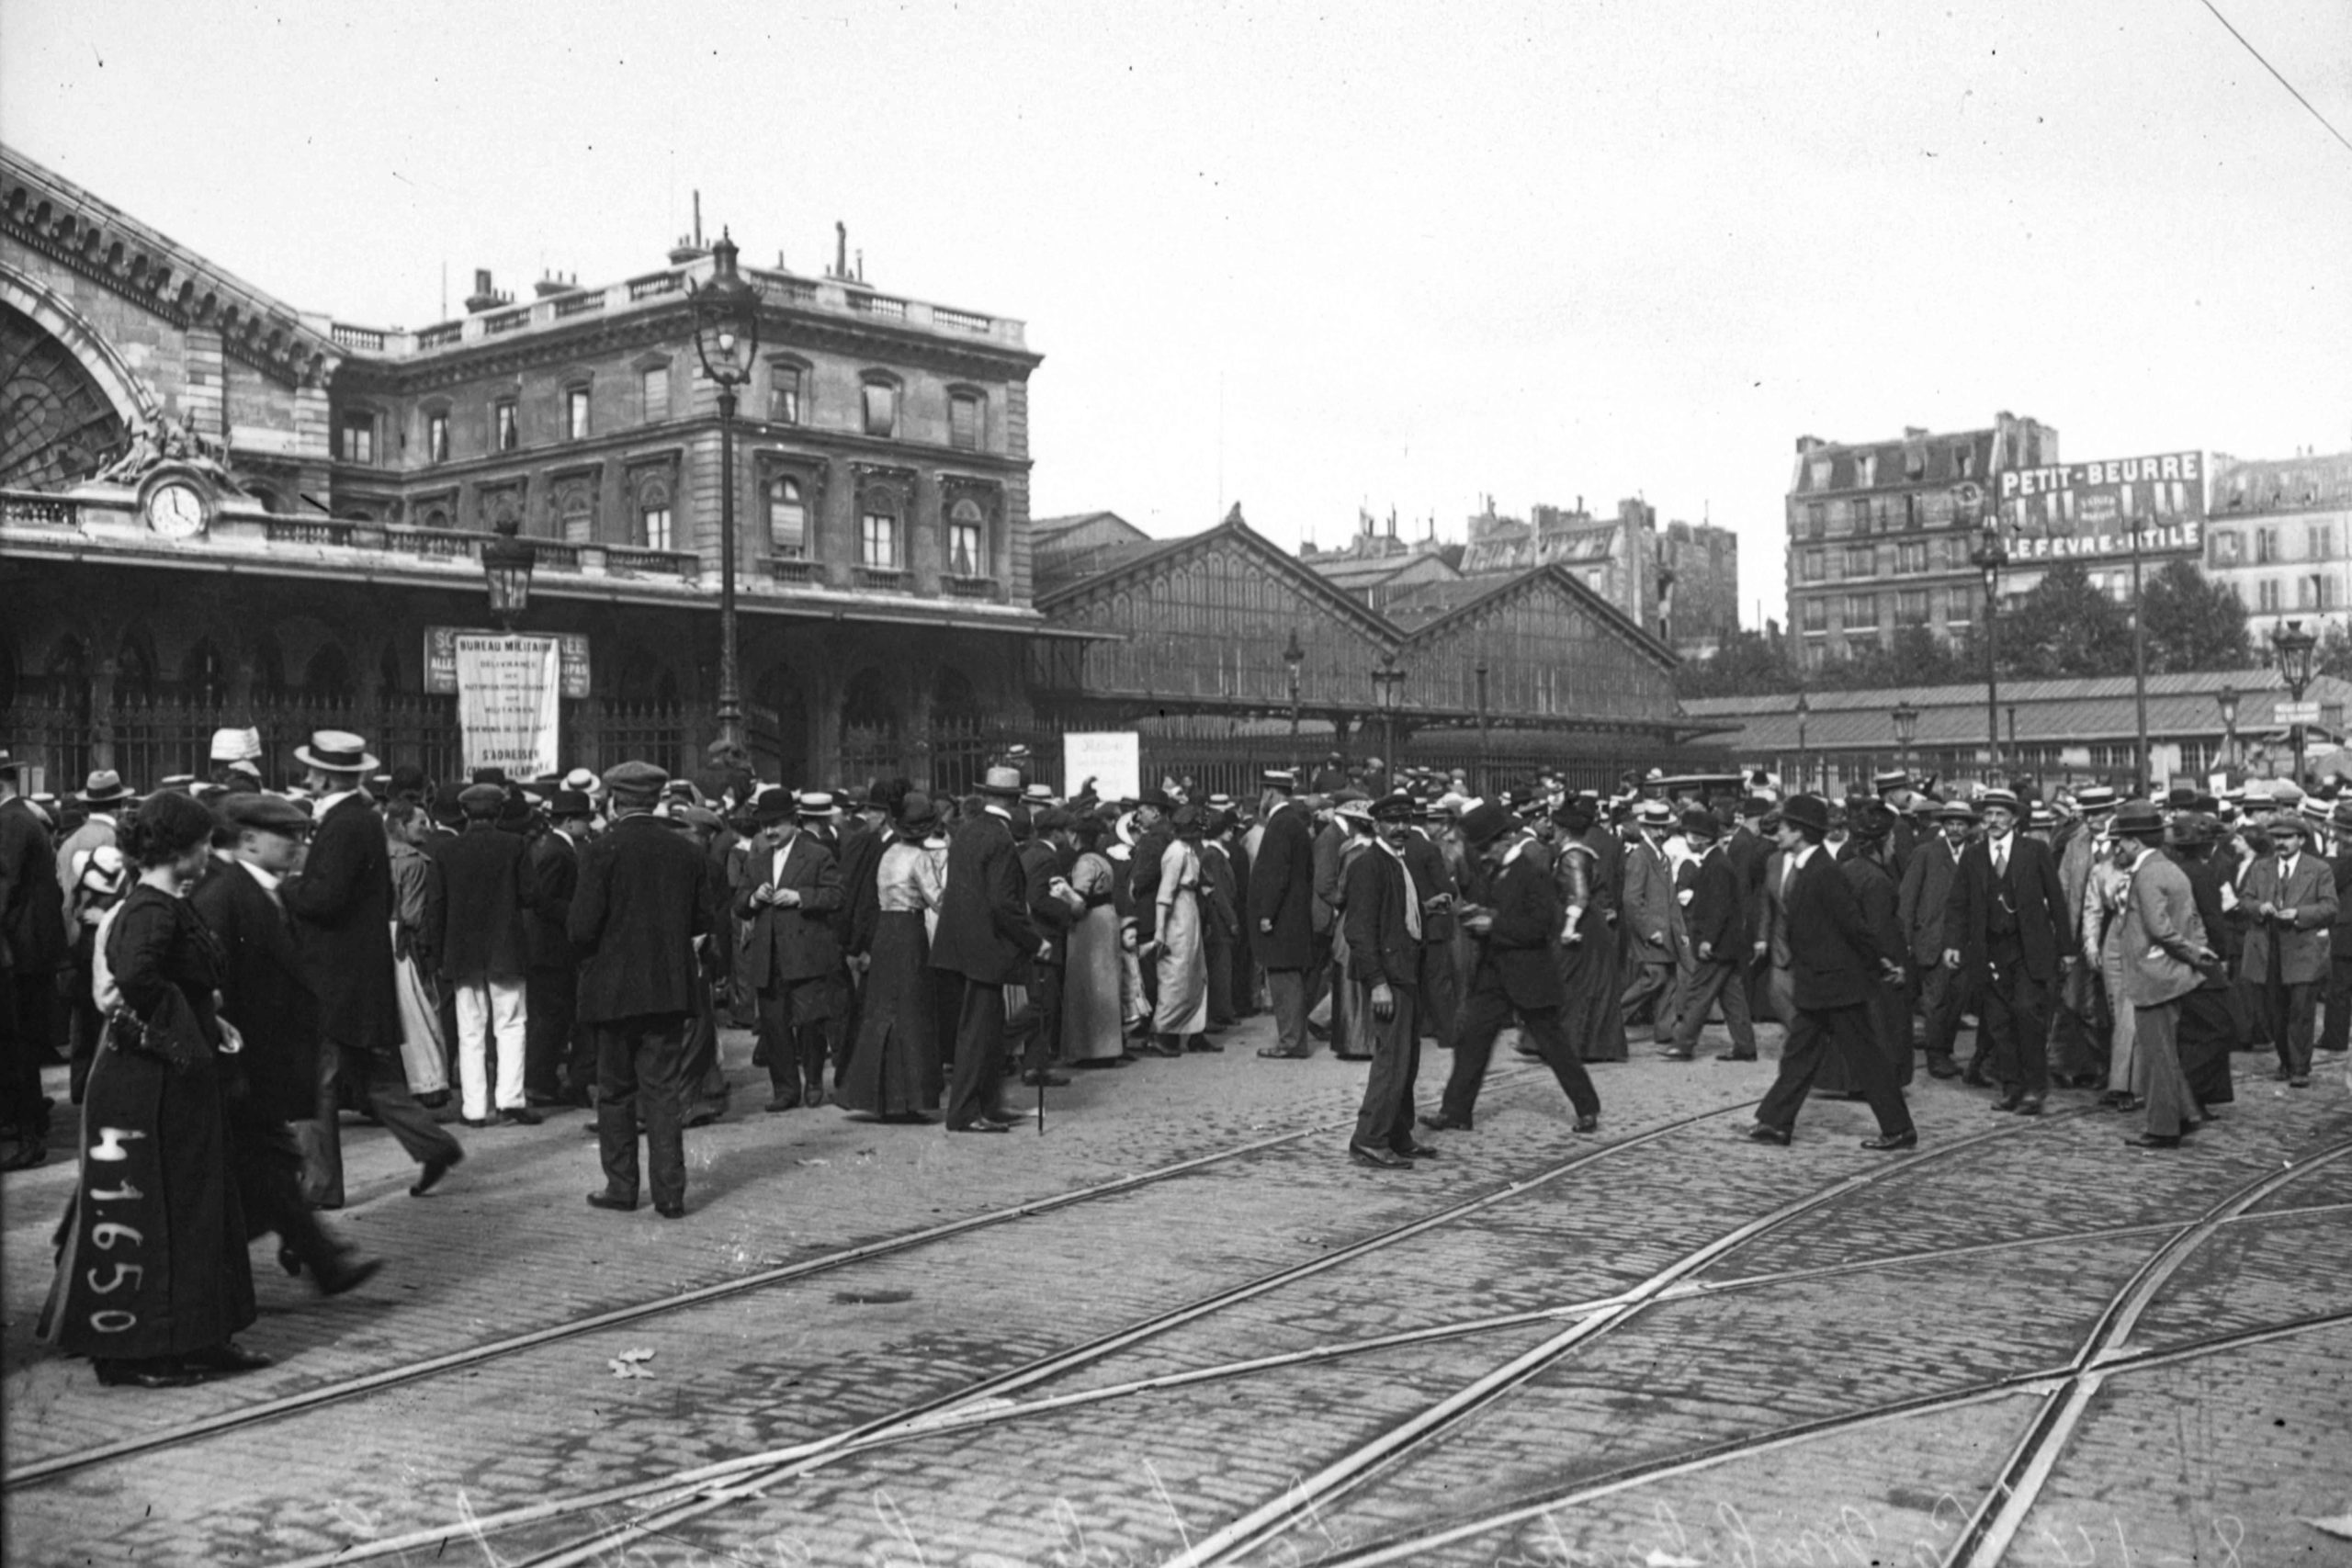 Mobilisation Aout 1914 [Public Domain via Wikimedia Commons]